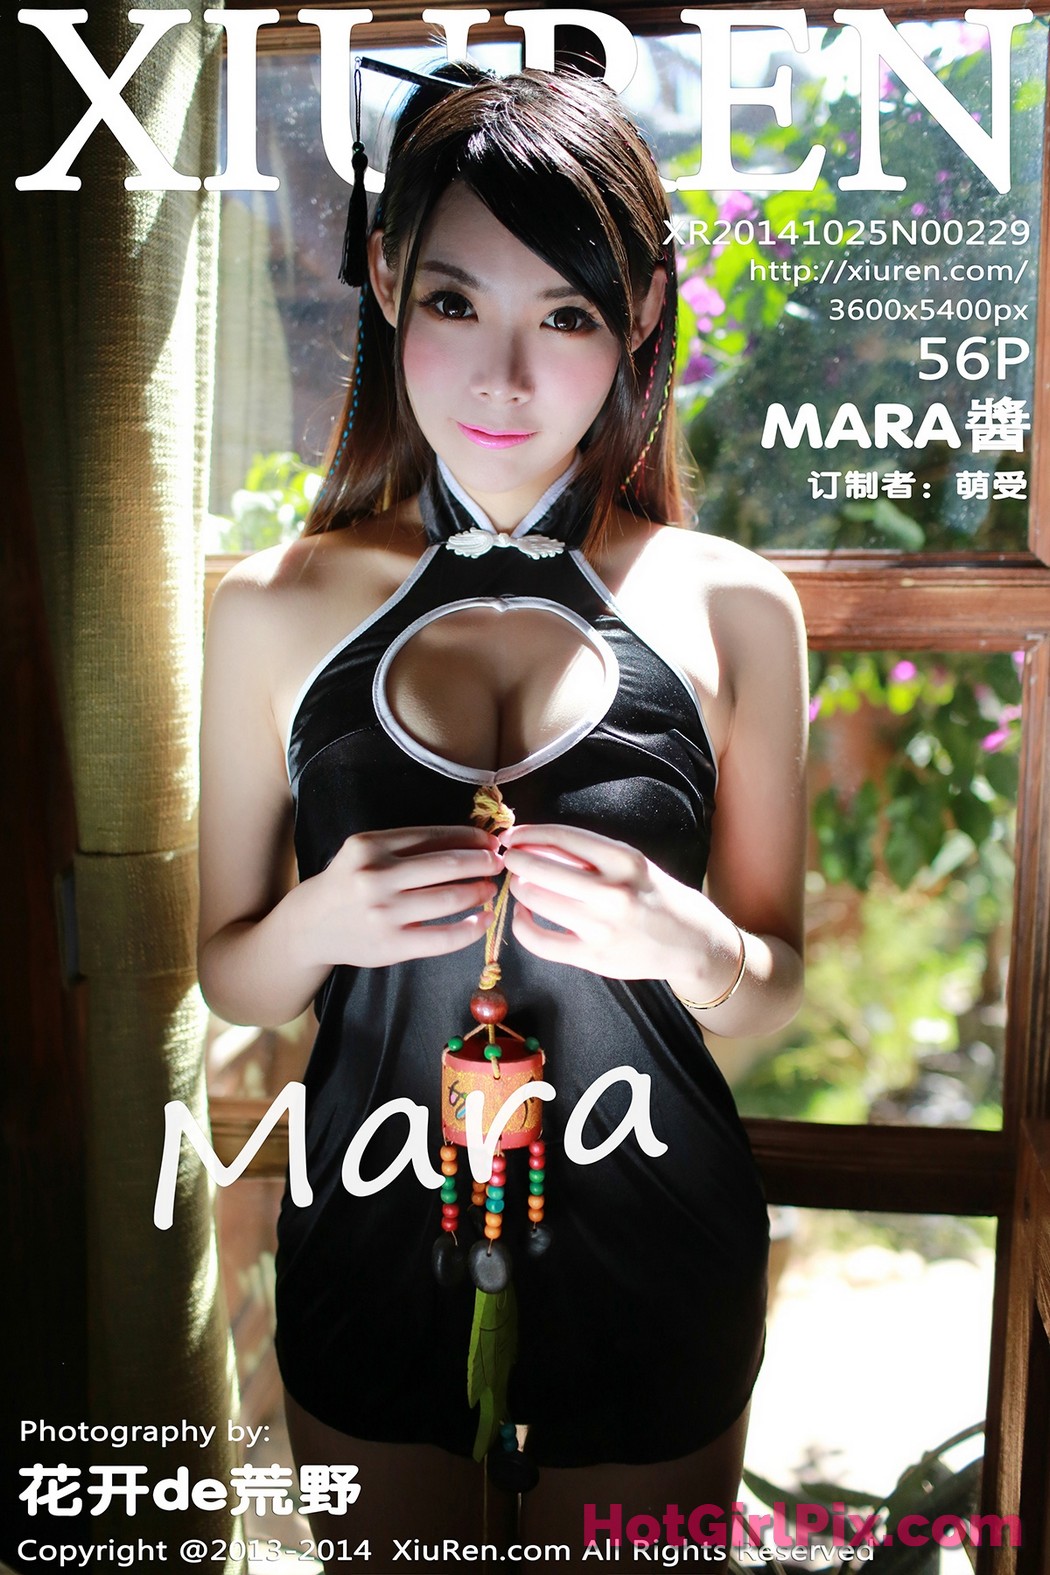 [XIUREN] No.229 MARA醬 Jiang Cover Photo